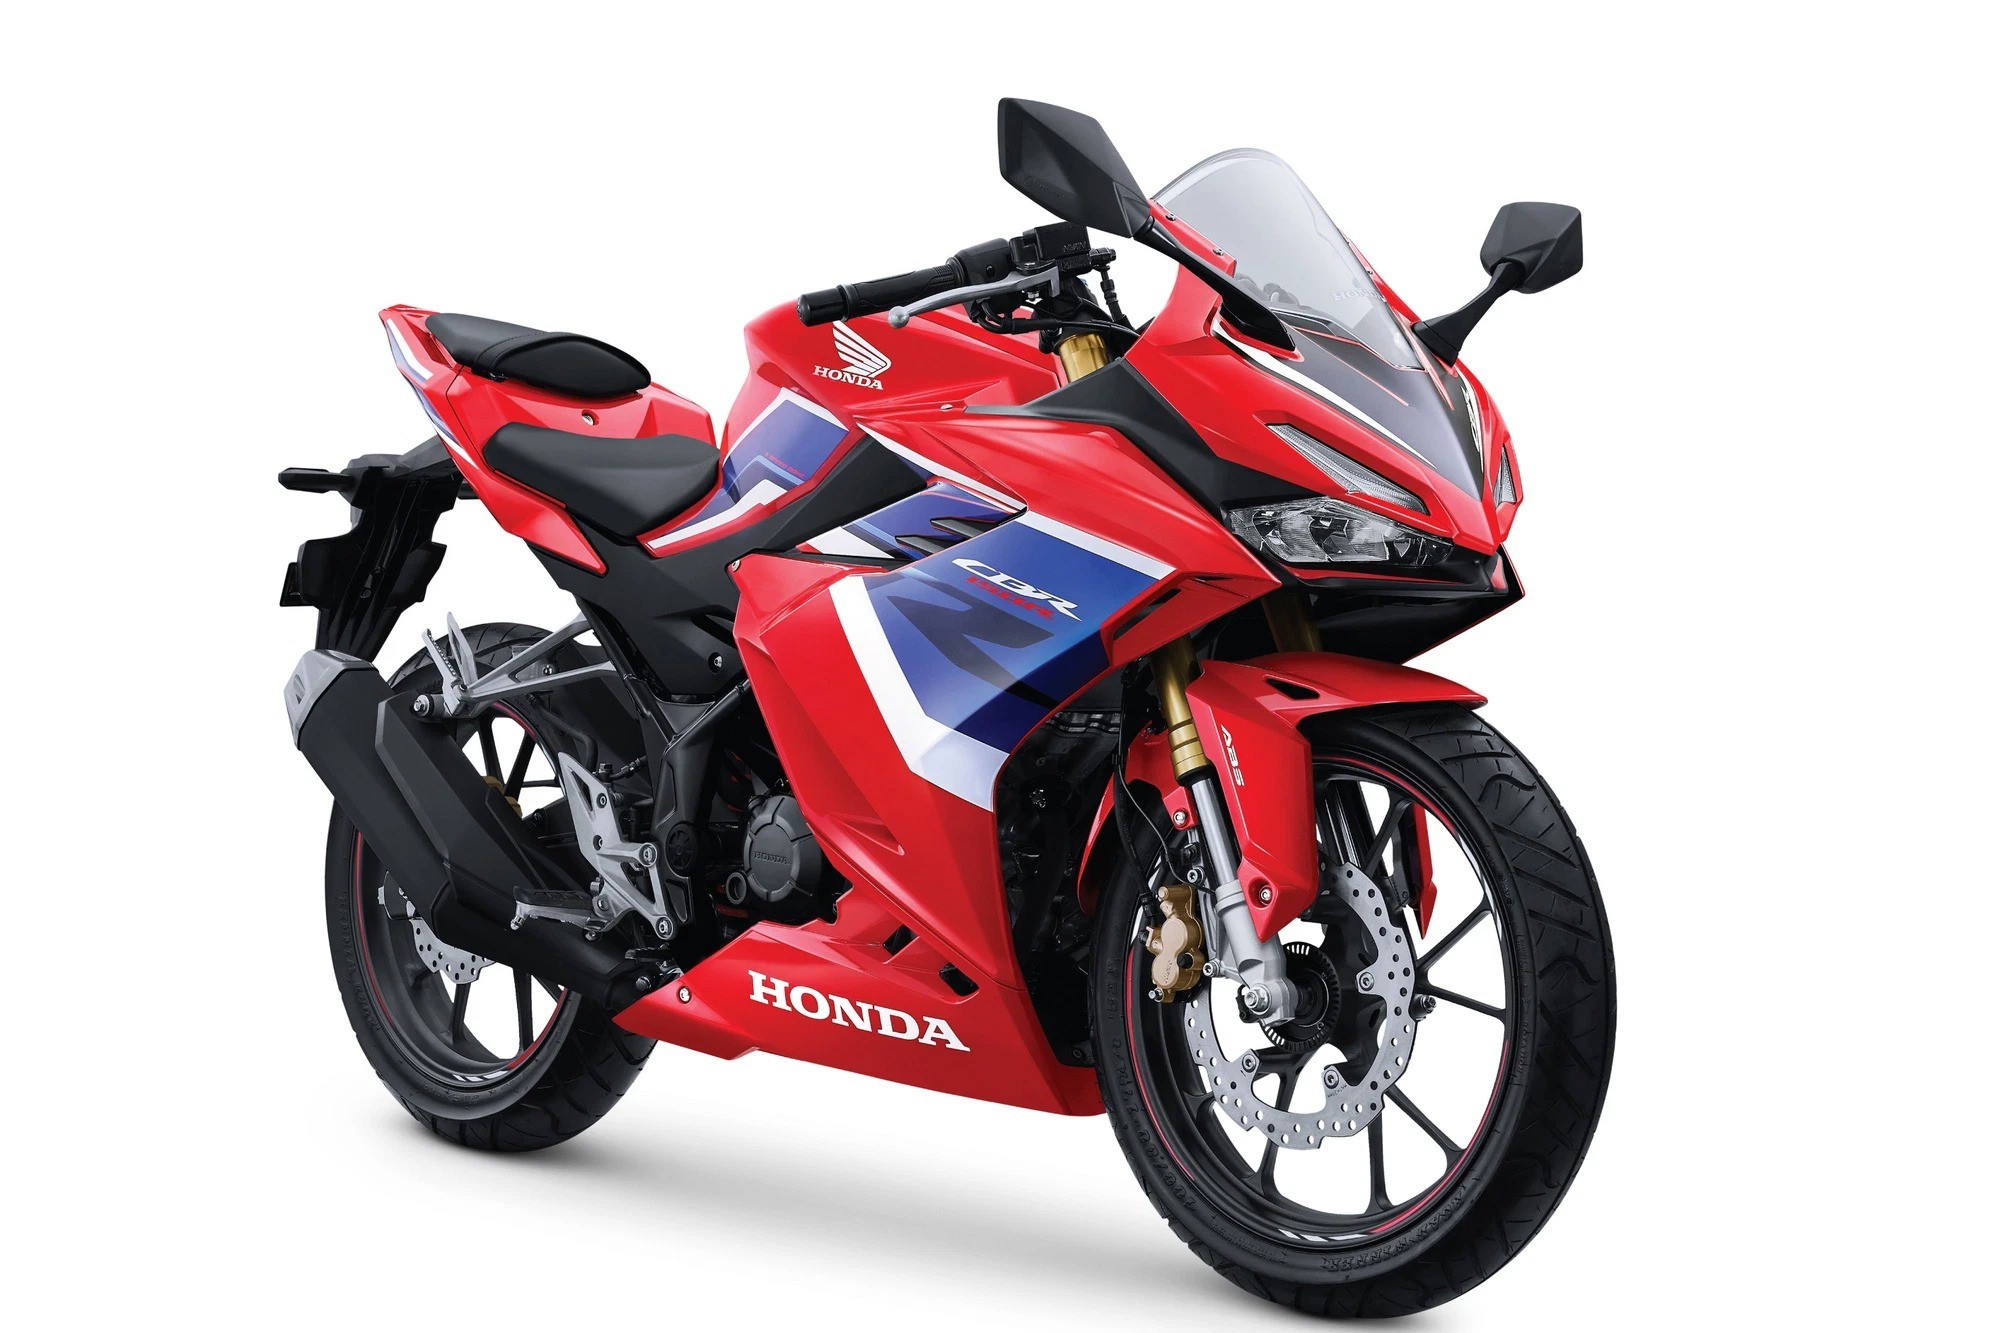 Giá xe Honda Vision 2020 mới nhất hiện nay